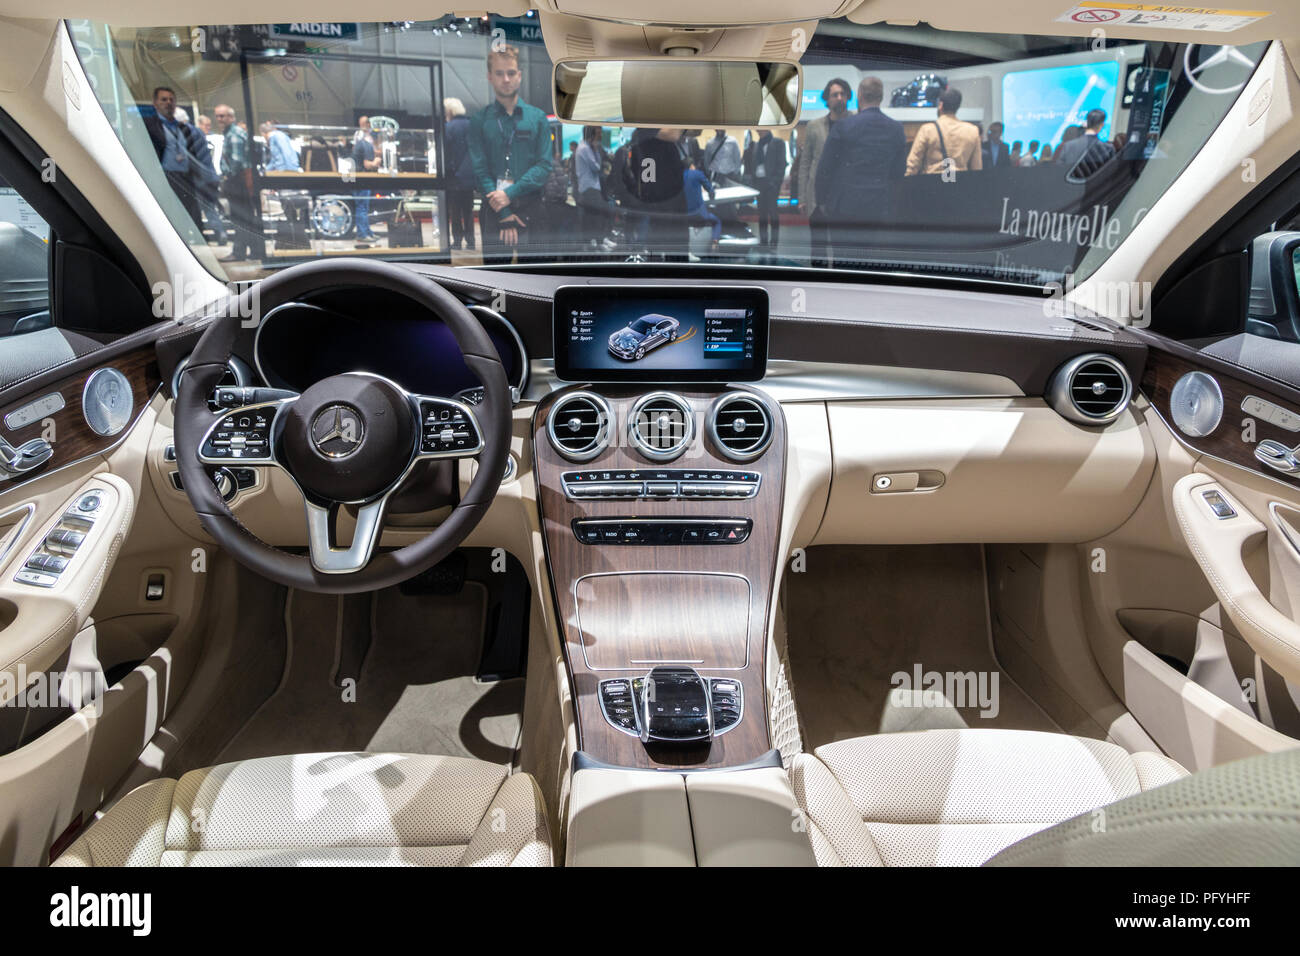 Genf, Schweiz - 7. MÄRZ 2018: Innenansicht des neuen Mercedes-Benz C-Klasse  C 200 Auto auf dem 88. Internationalen Automobilsalon in Genf präsentiert  Stockfotografie - Alamy